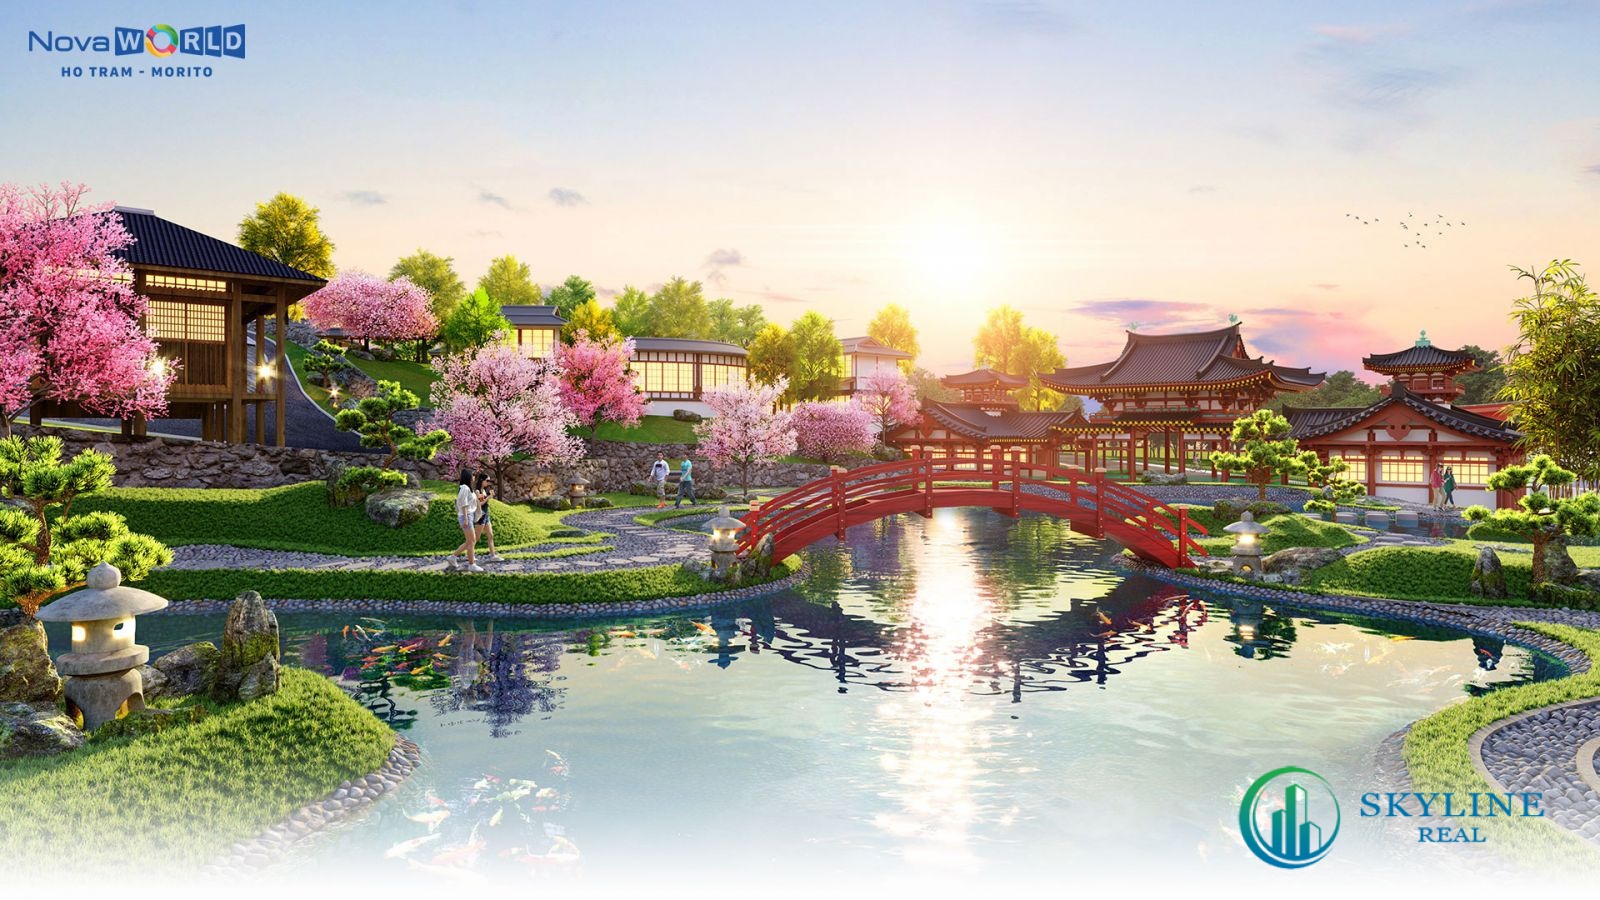 Mỗi second home tại Morito đều có khu vườn Nhật ngay sân nhà và kết nối với công viên trung tâm.